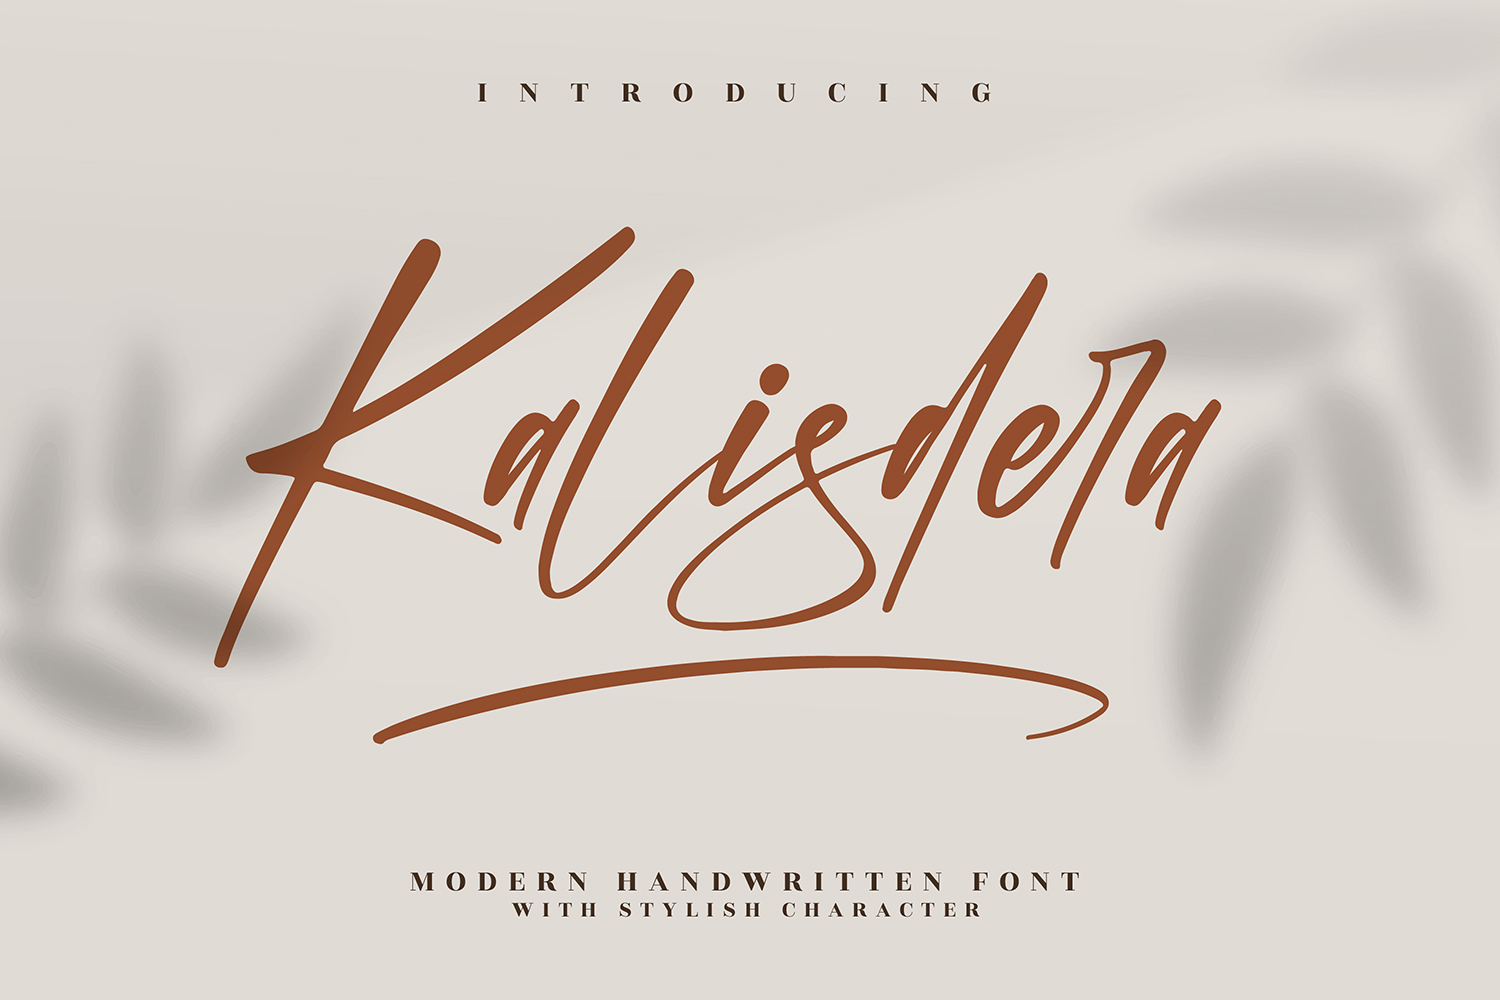 Kalisdera Free Font